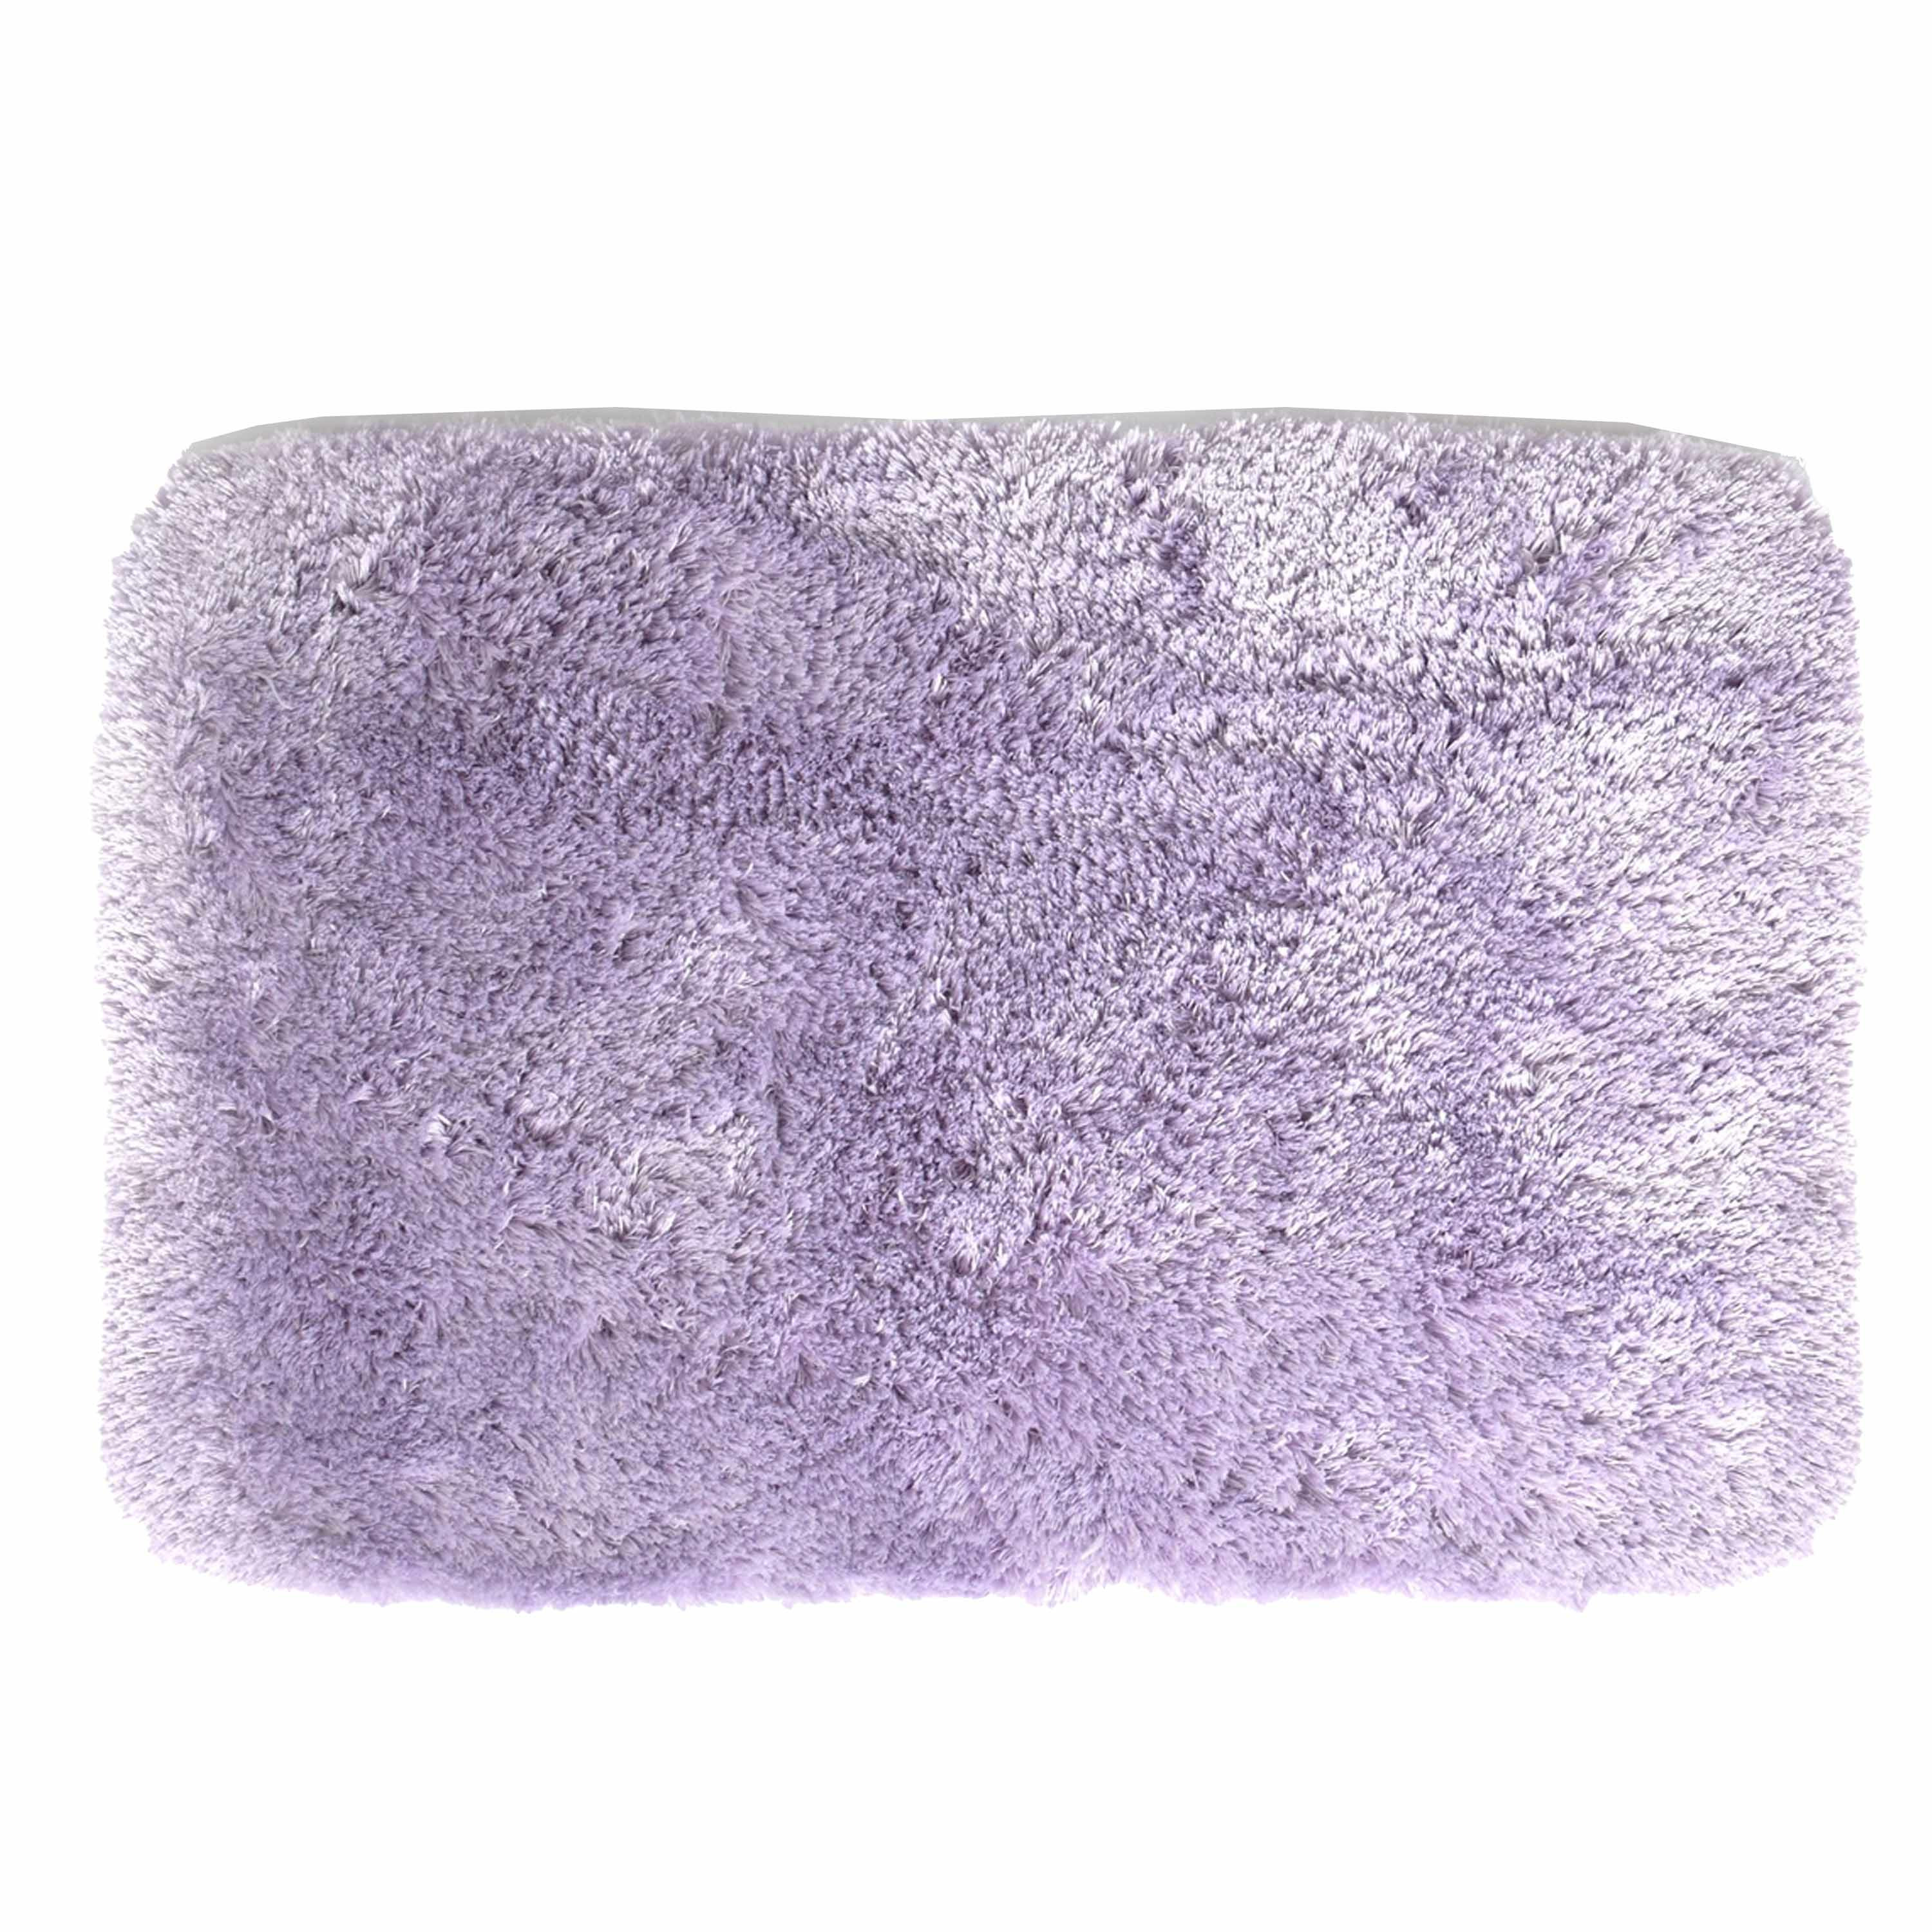 Spirella badkamer vloer kleedje-badmat tapijt hoogpolig en luxe uitvoering lila paars 40 x 60